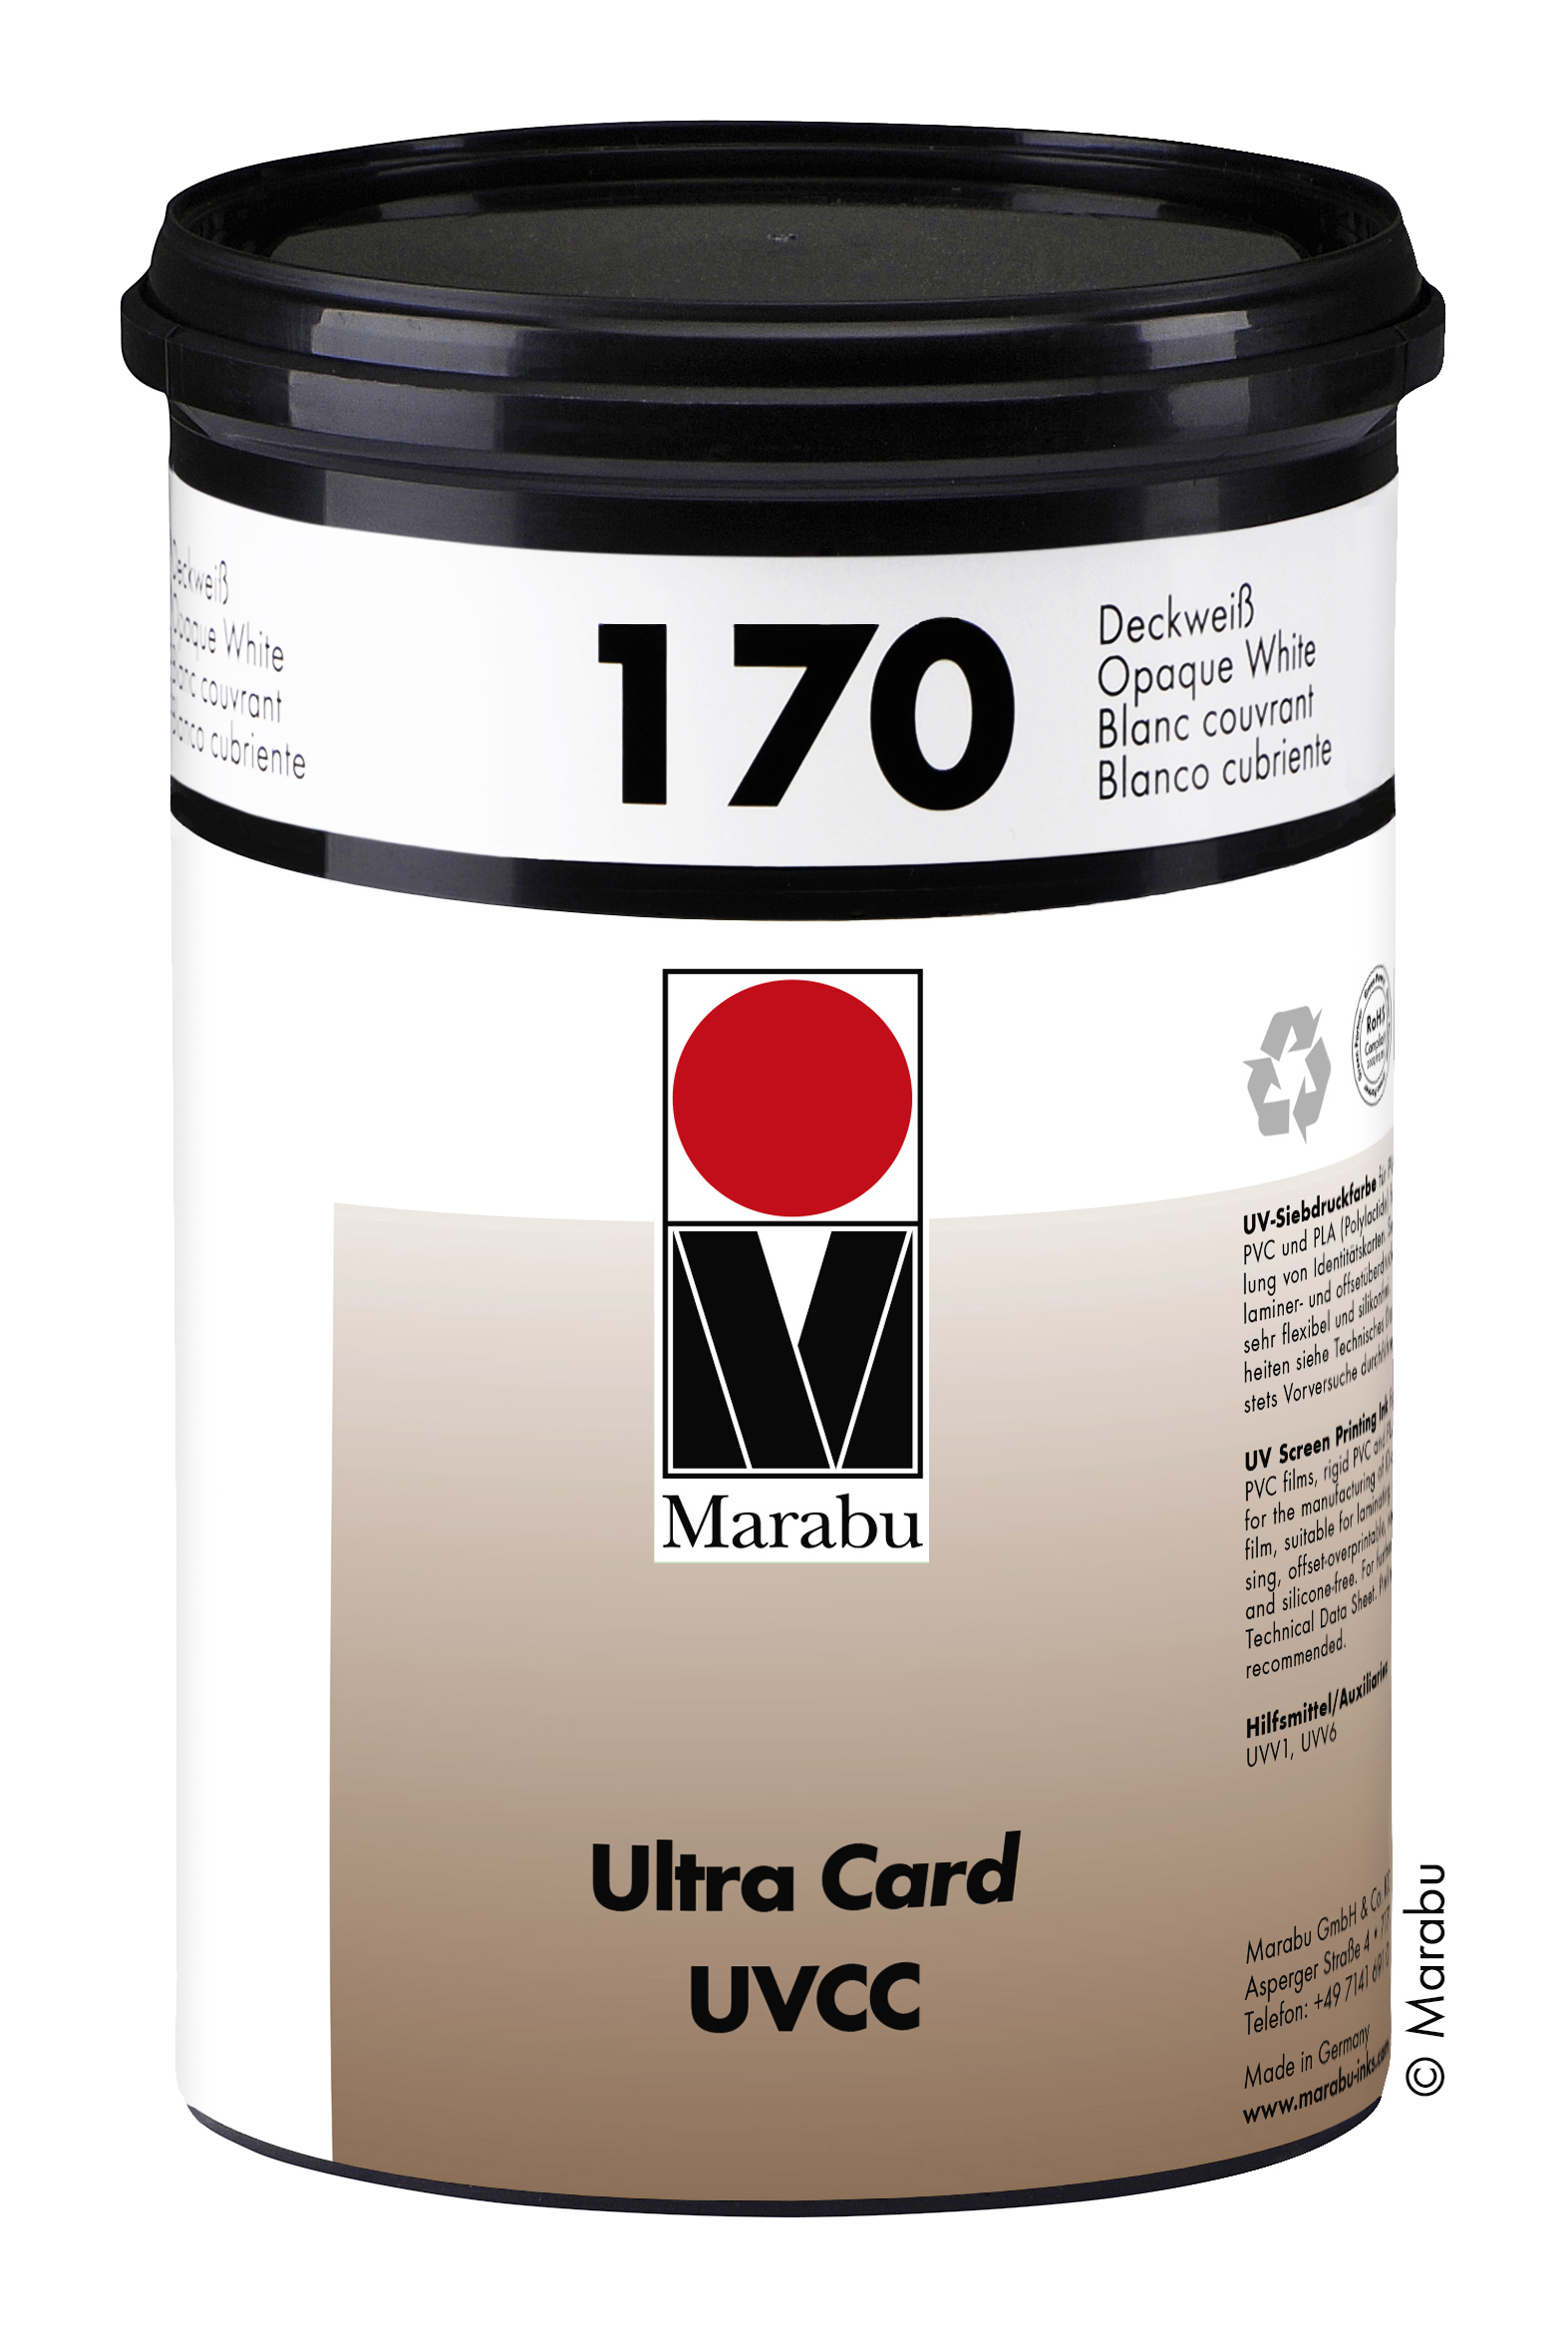 Potisk platebních karet barvami Mara Flex FX a Ultra Card UVCC  